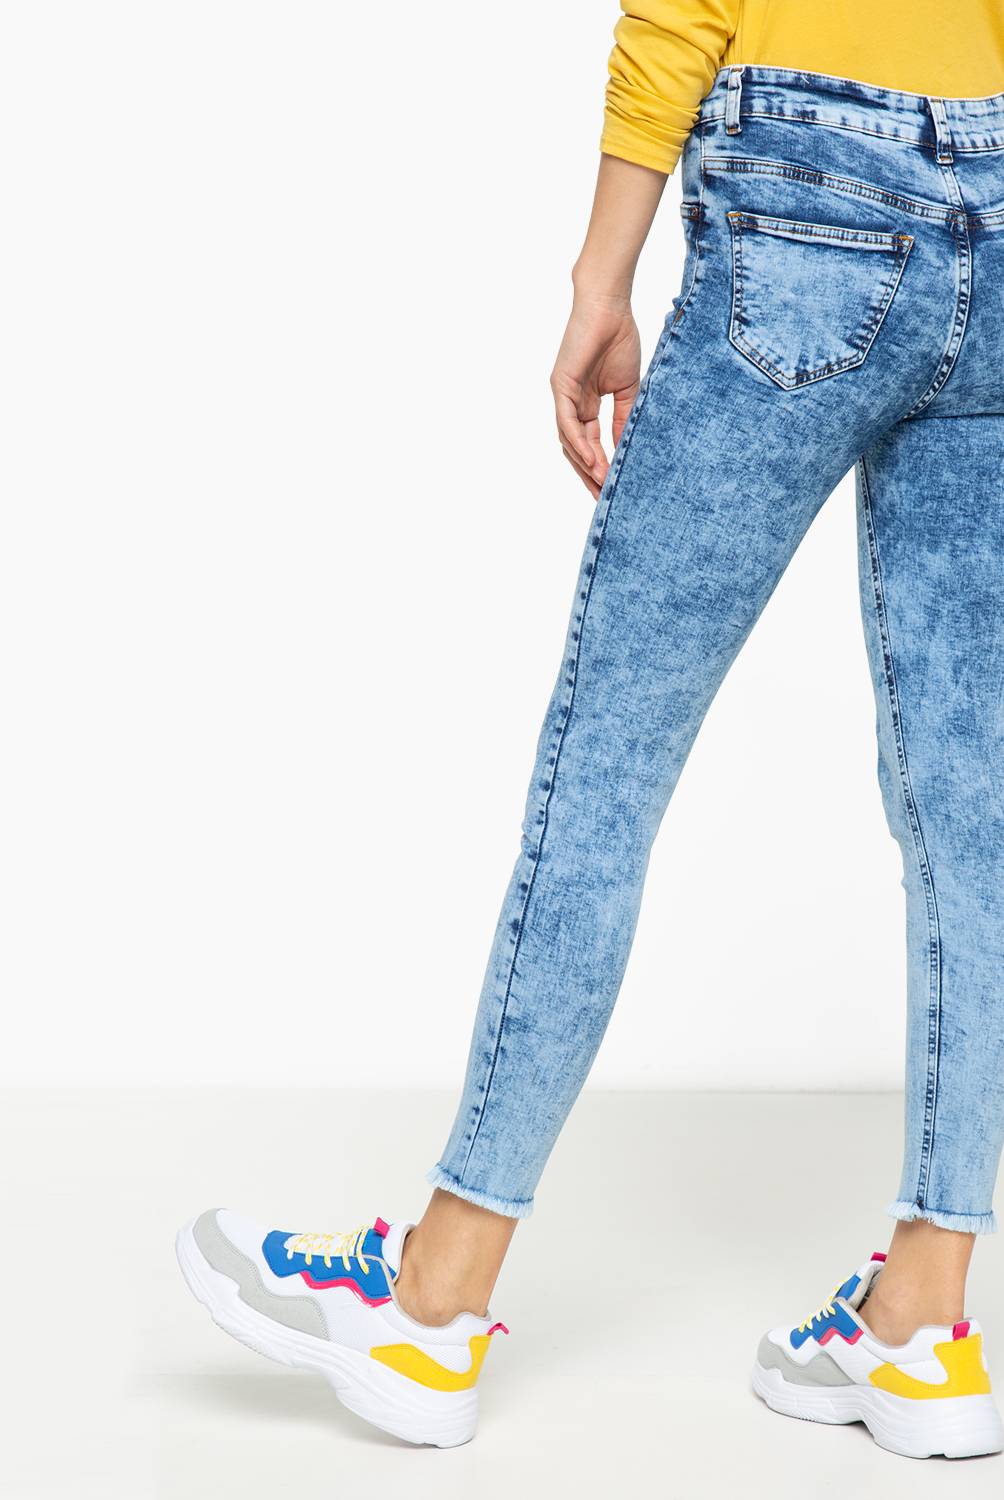 SYBILLA - Jeans de Algodón Mujer